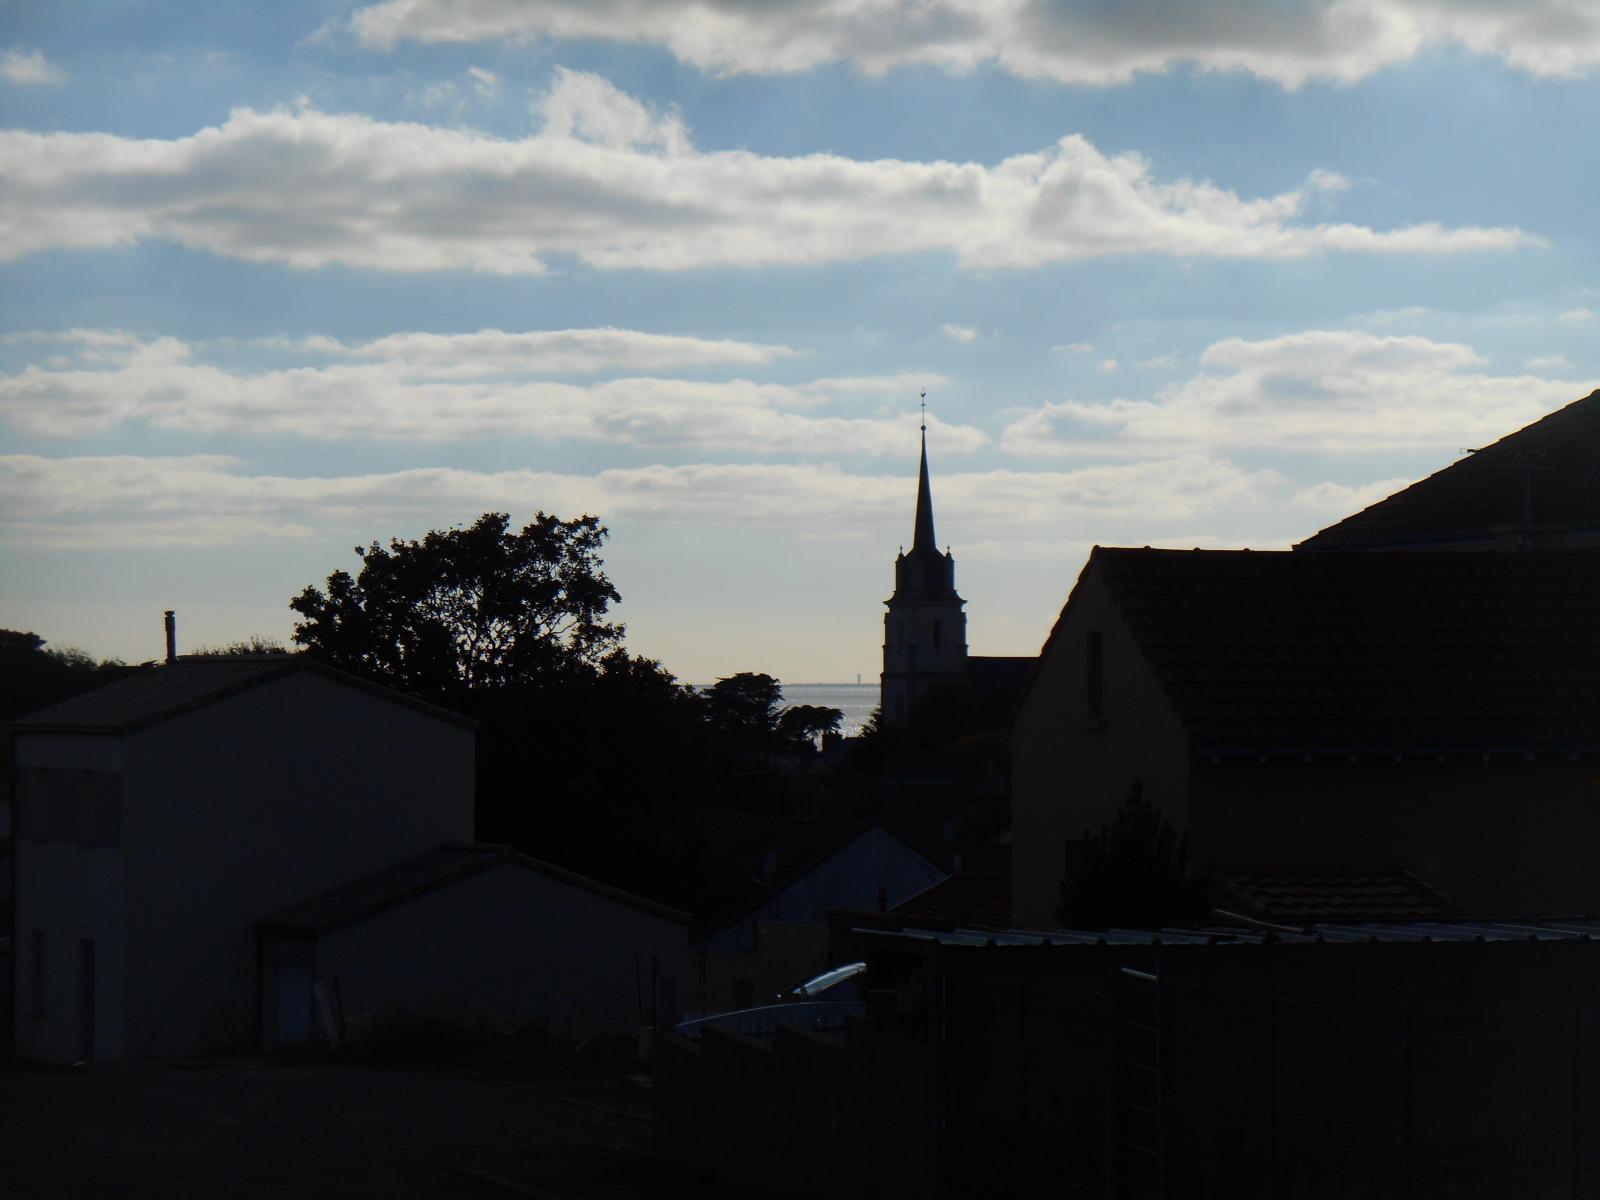 La vue contrastée avec la mer lumineuse et l'église sombre (Les Moutiers en Retz)